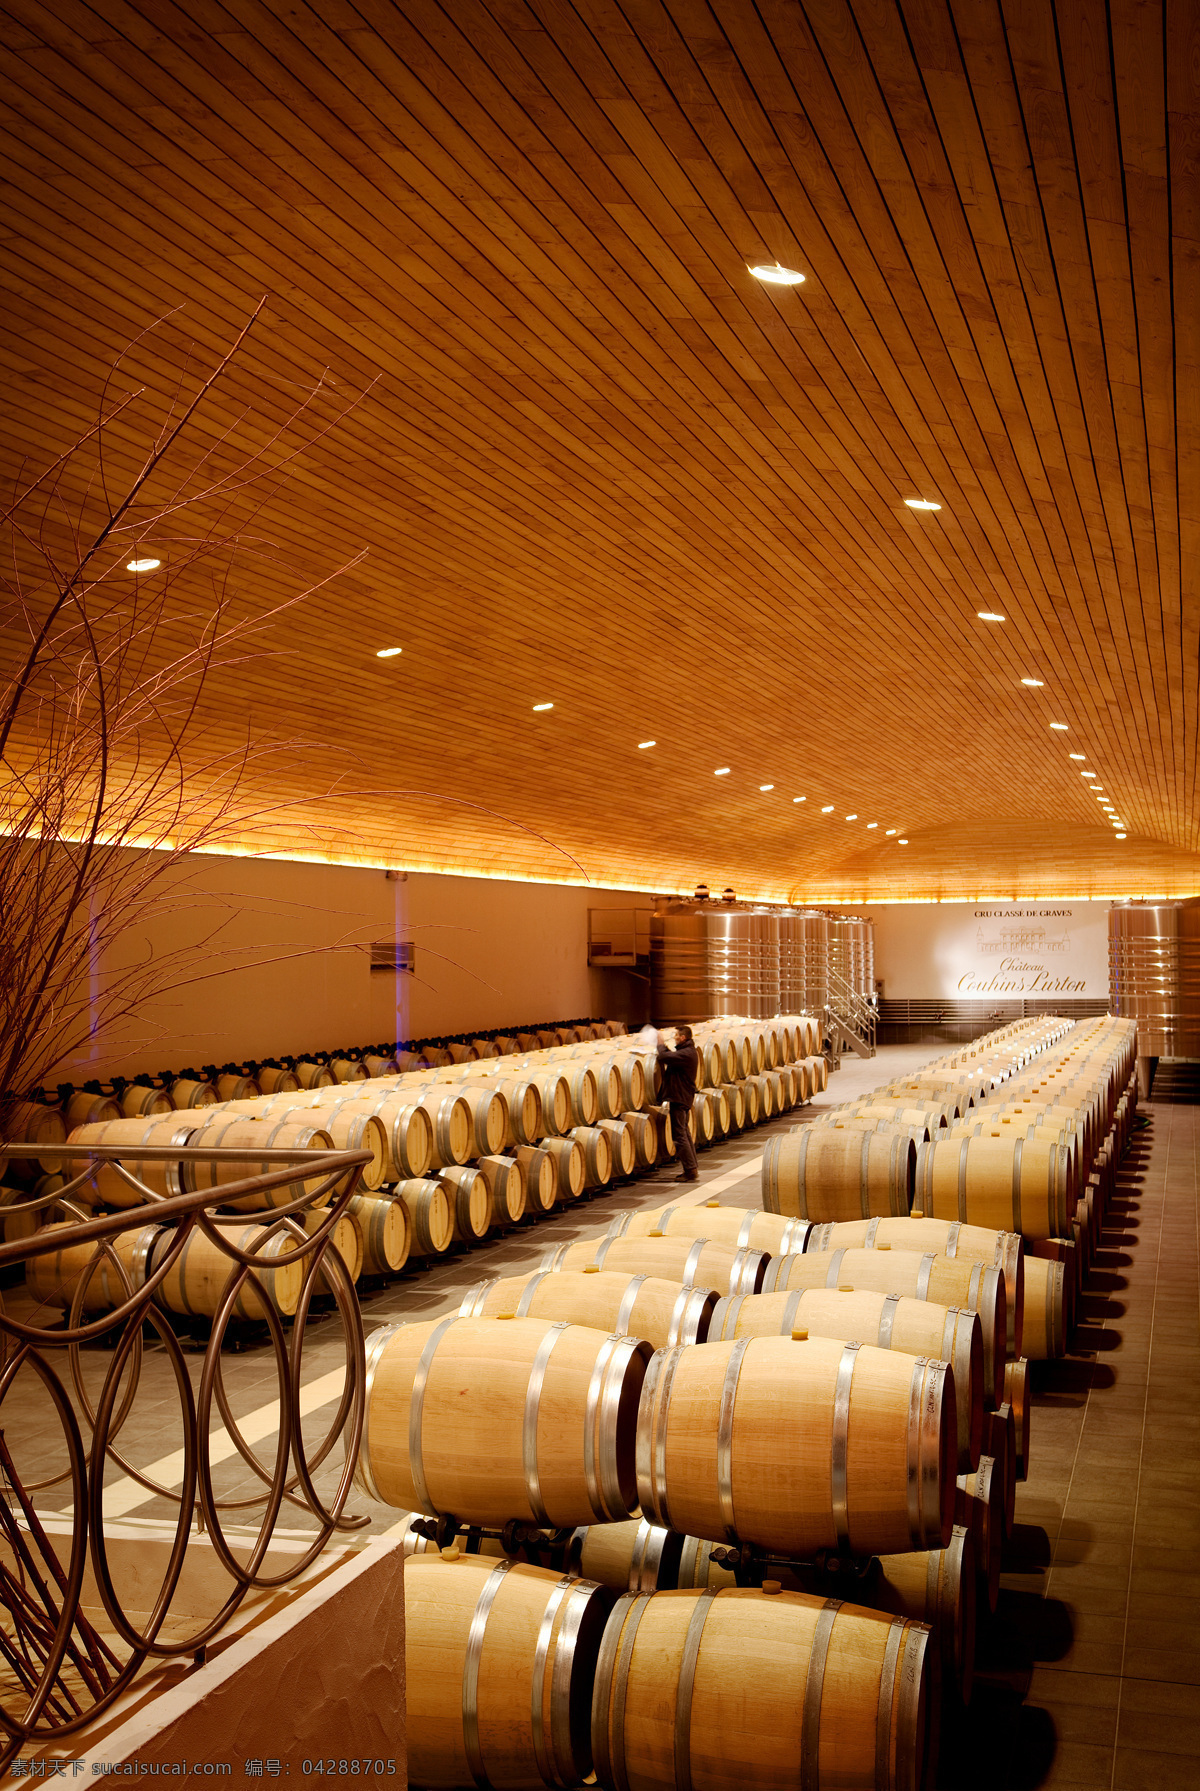 酒窖免费下载 法国红酒 建筑园林 酒窖 室内摄影 橡木桶 葡萄酒窖 psd源文件